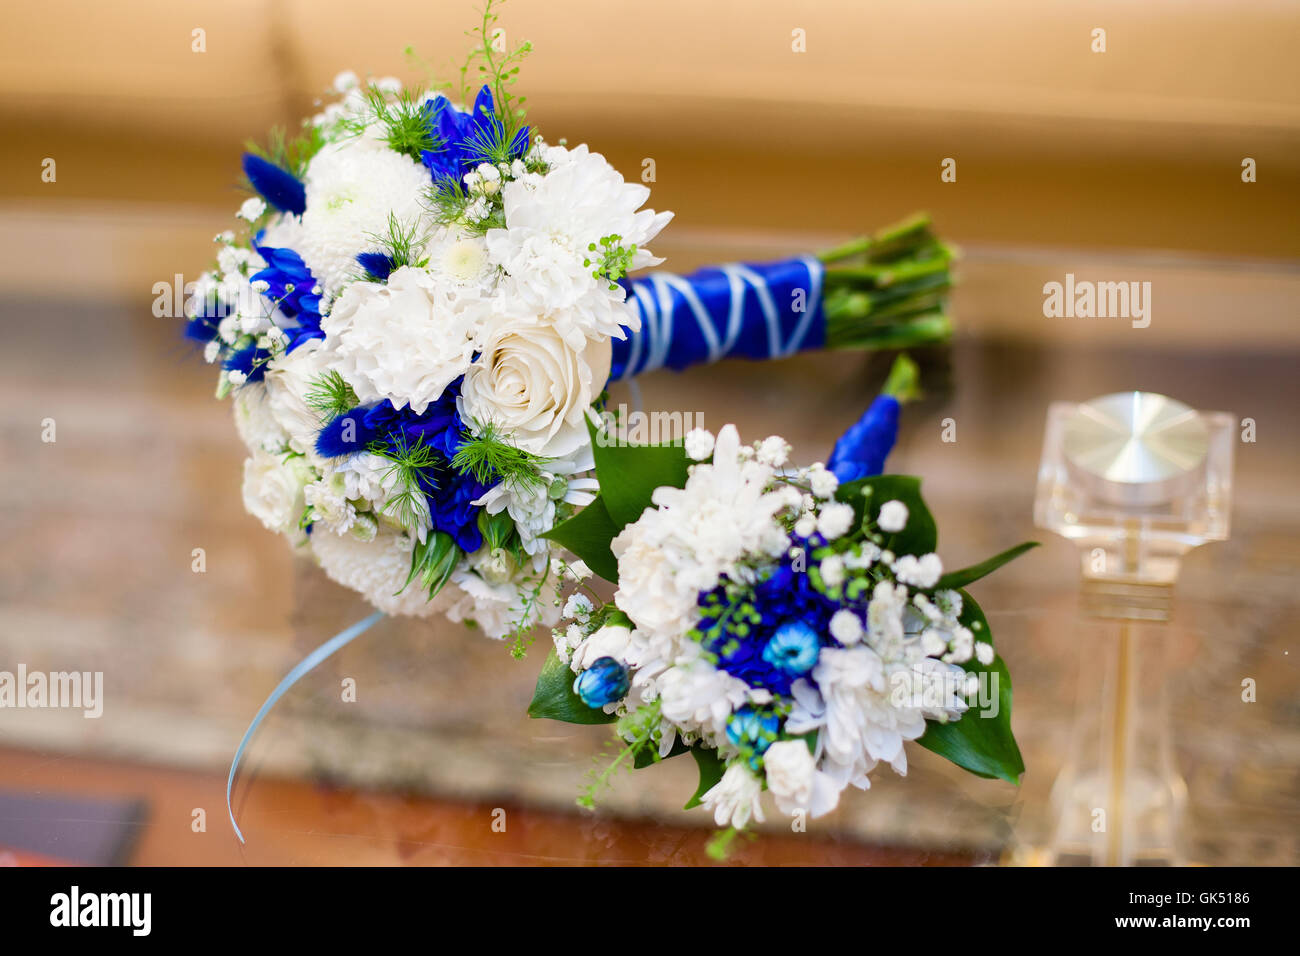 Mariage bleu et blanc bouquet de roses sur la table en verre Photo Stock -  Alamy